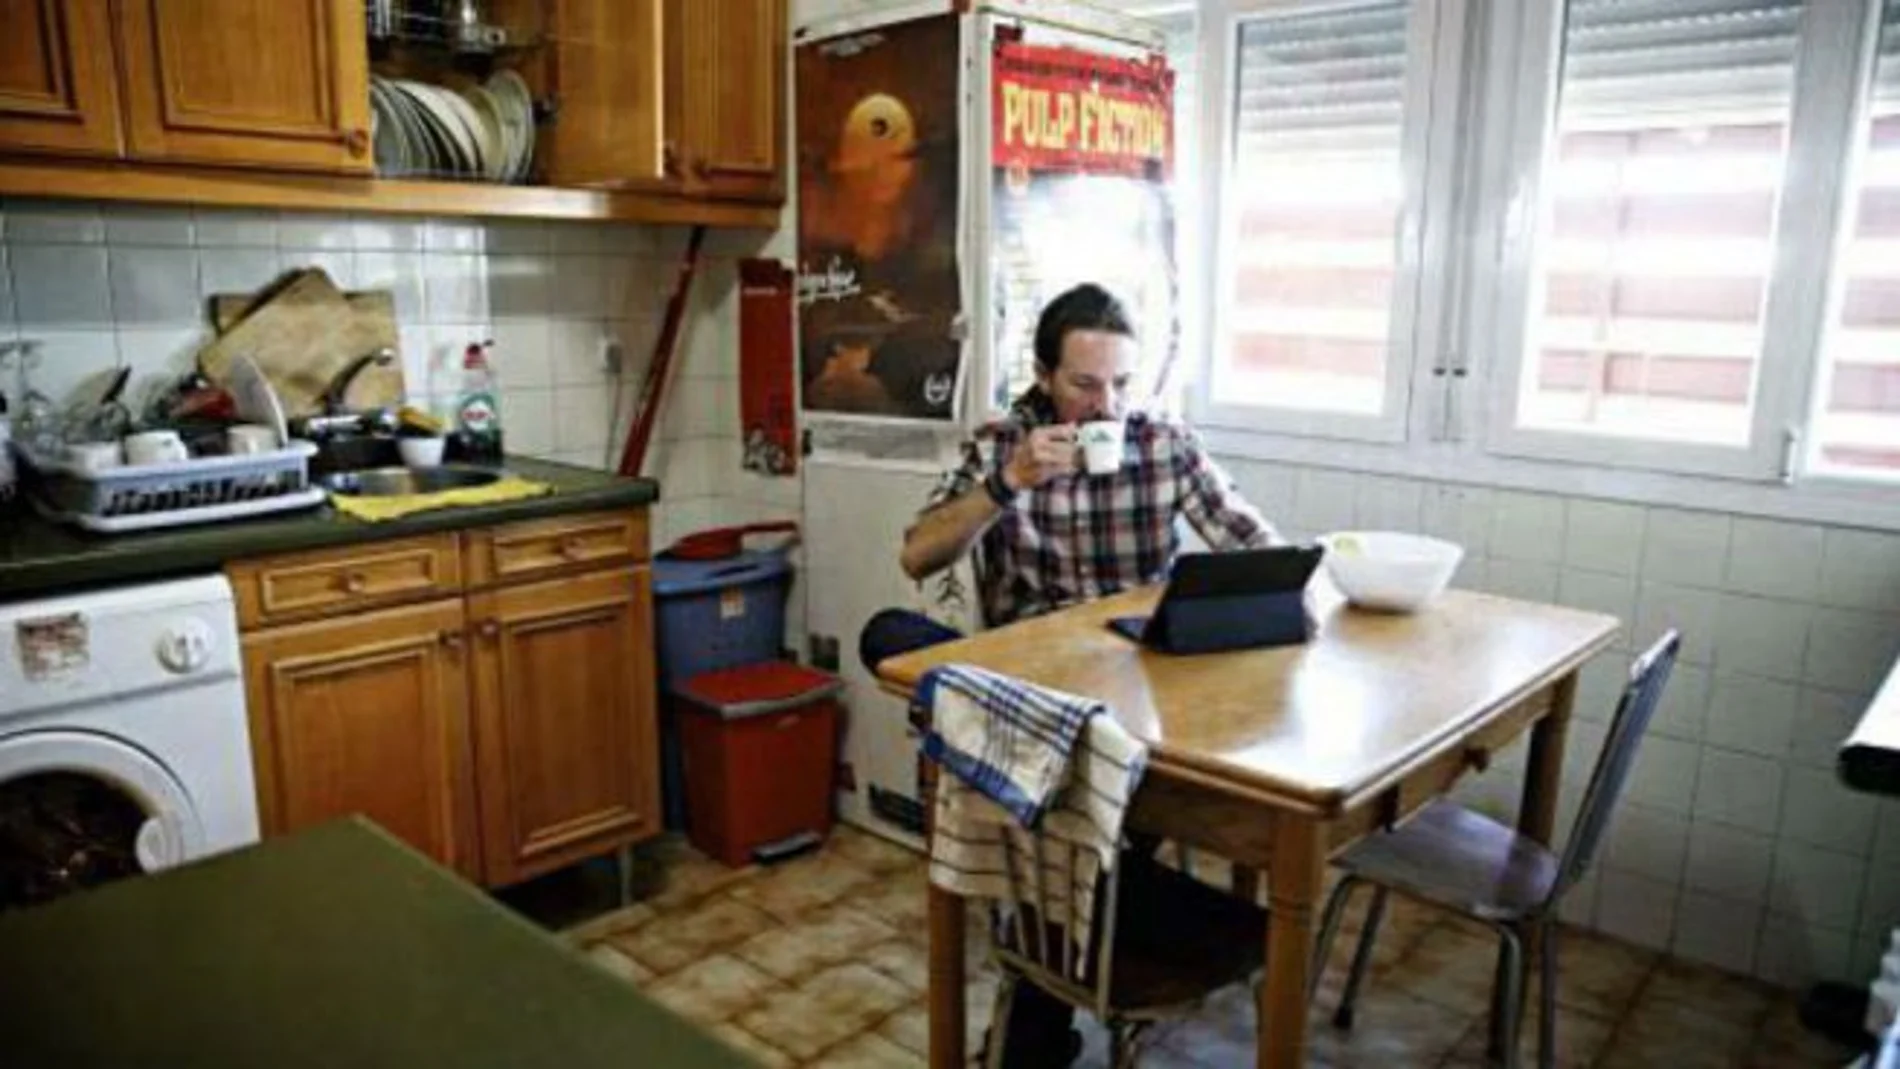 Pablo Iglesias en la cocina de su antigua casa con un bote de Fairy en el fondo/Twitter